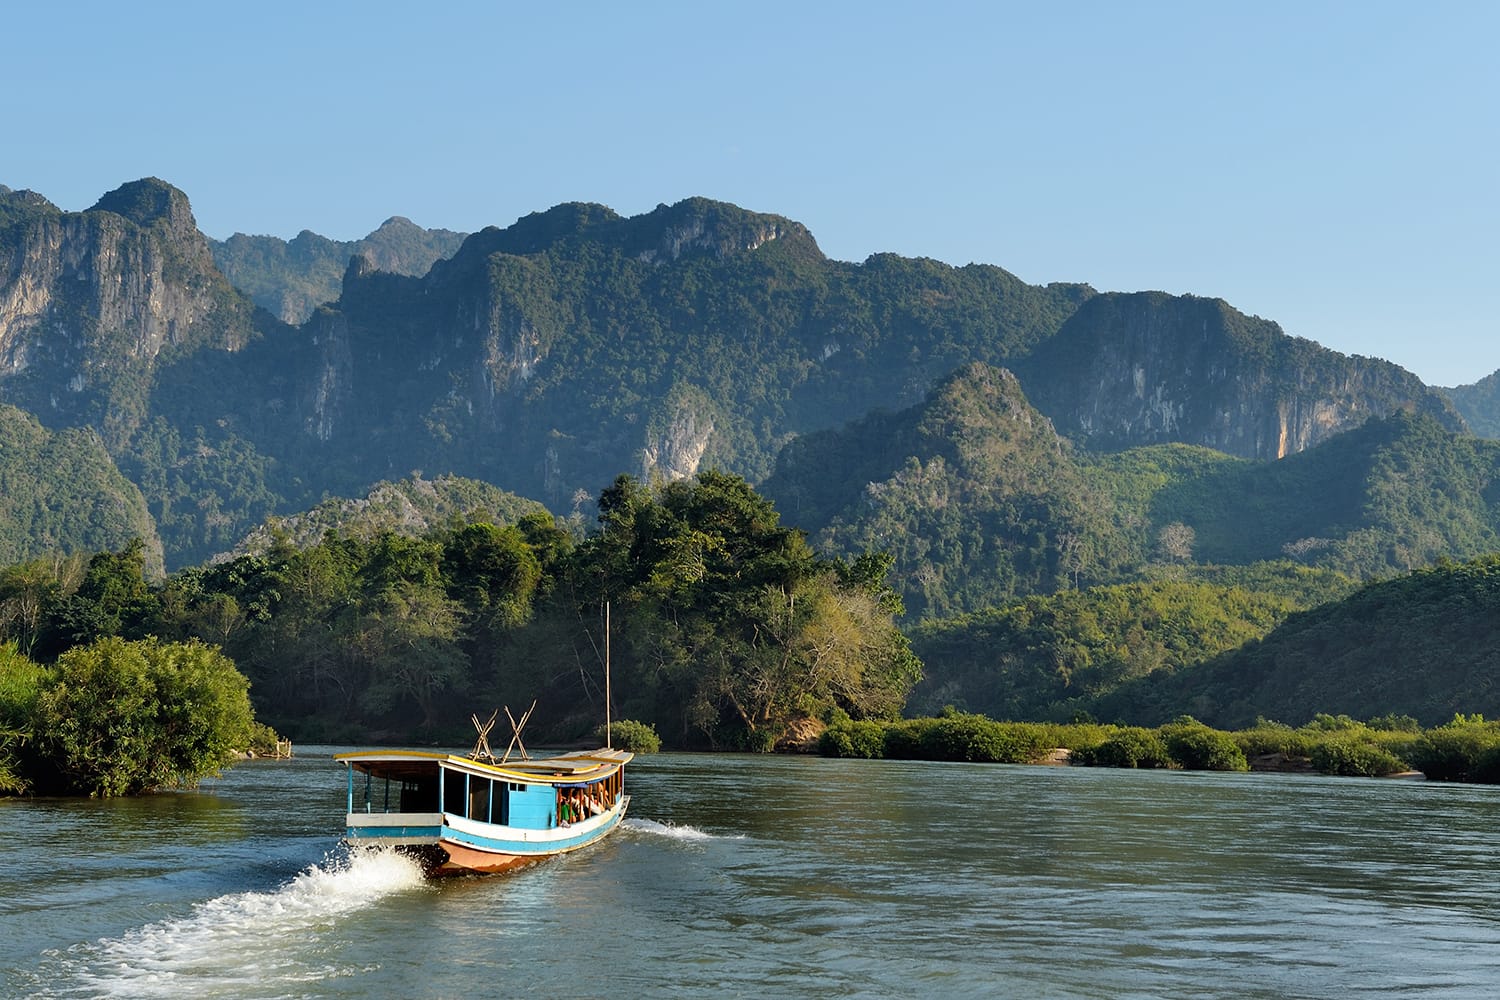 Όμορφο τοπίο με περιήγηση με σκάφος στον ποταμό Μεκόνγκ κοντά στο Λουάνγκ Πραμπάνγκ στο Λάος.